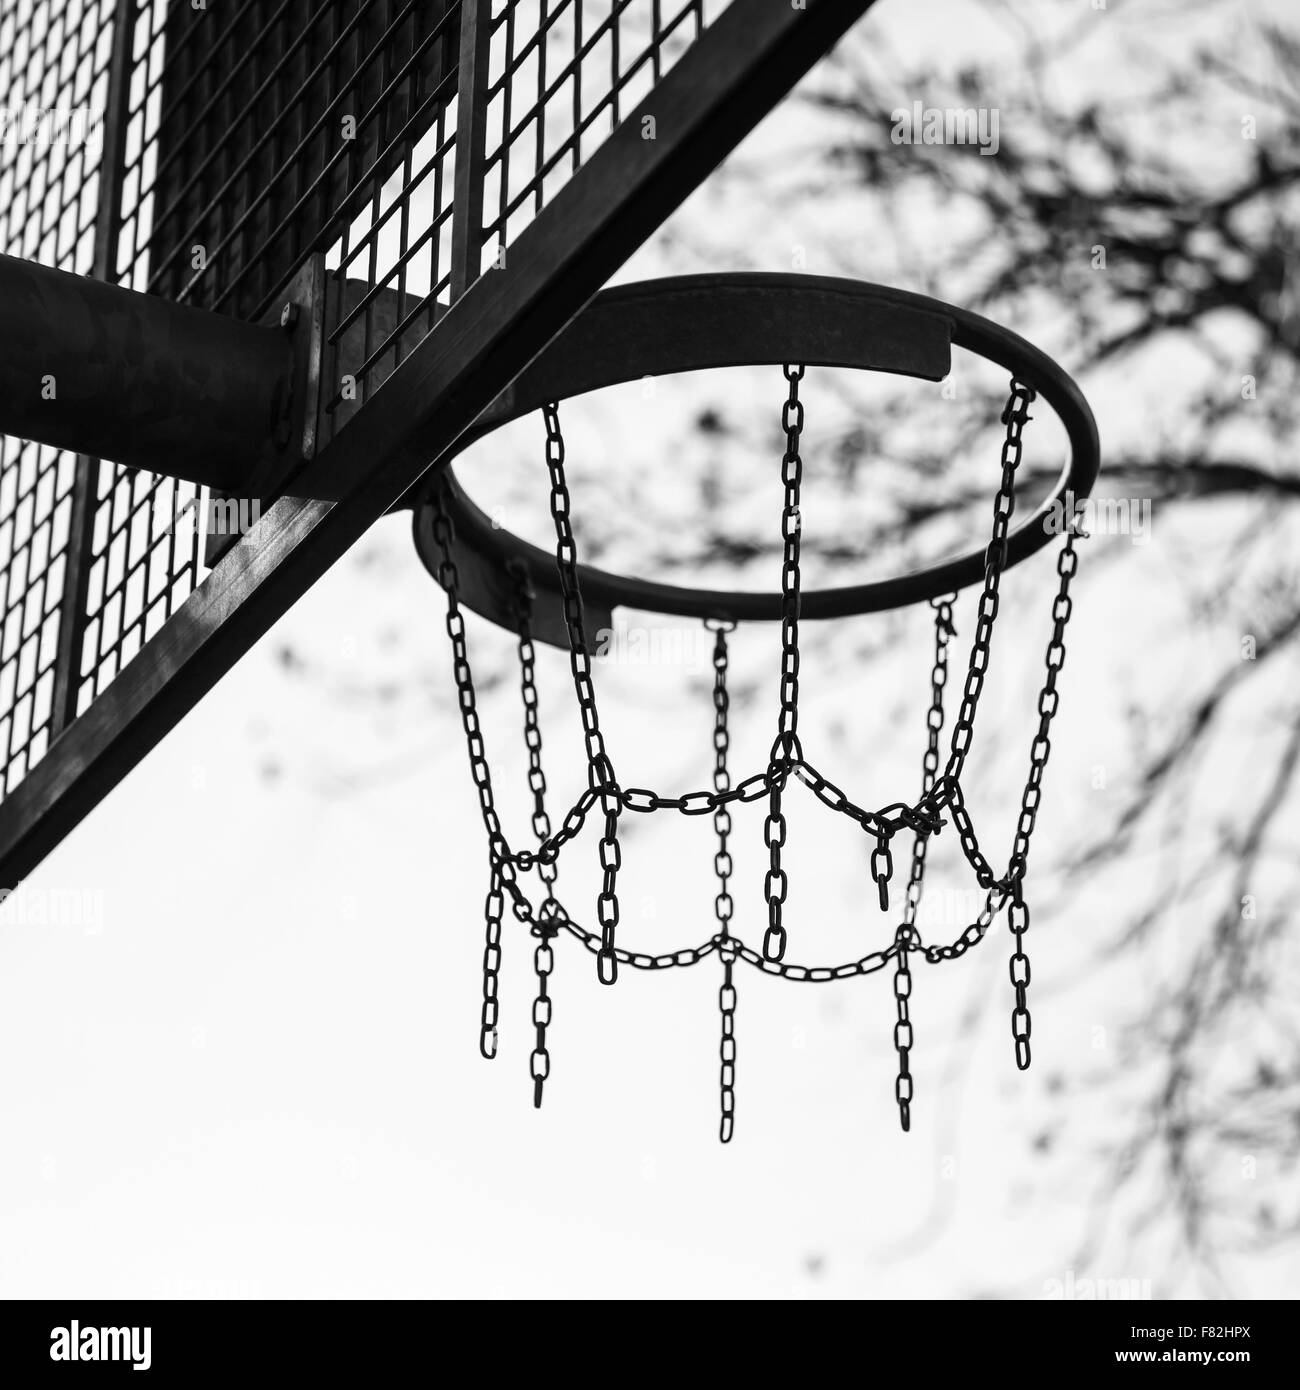 Korb von Ketten für Basketball spielen auf dem Spielplatz in einem Stadt-Park, schwarz / weiß-Foto gemacht Stockfoto